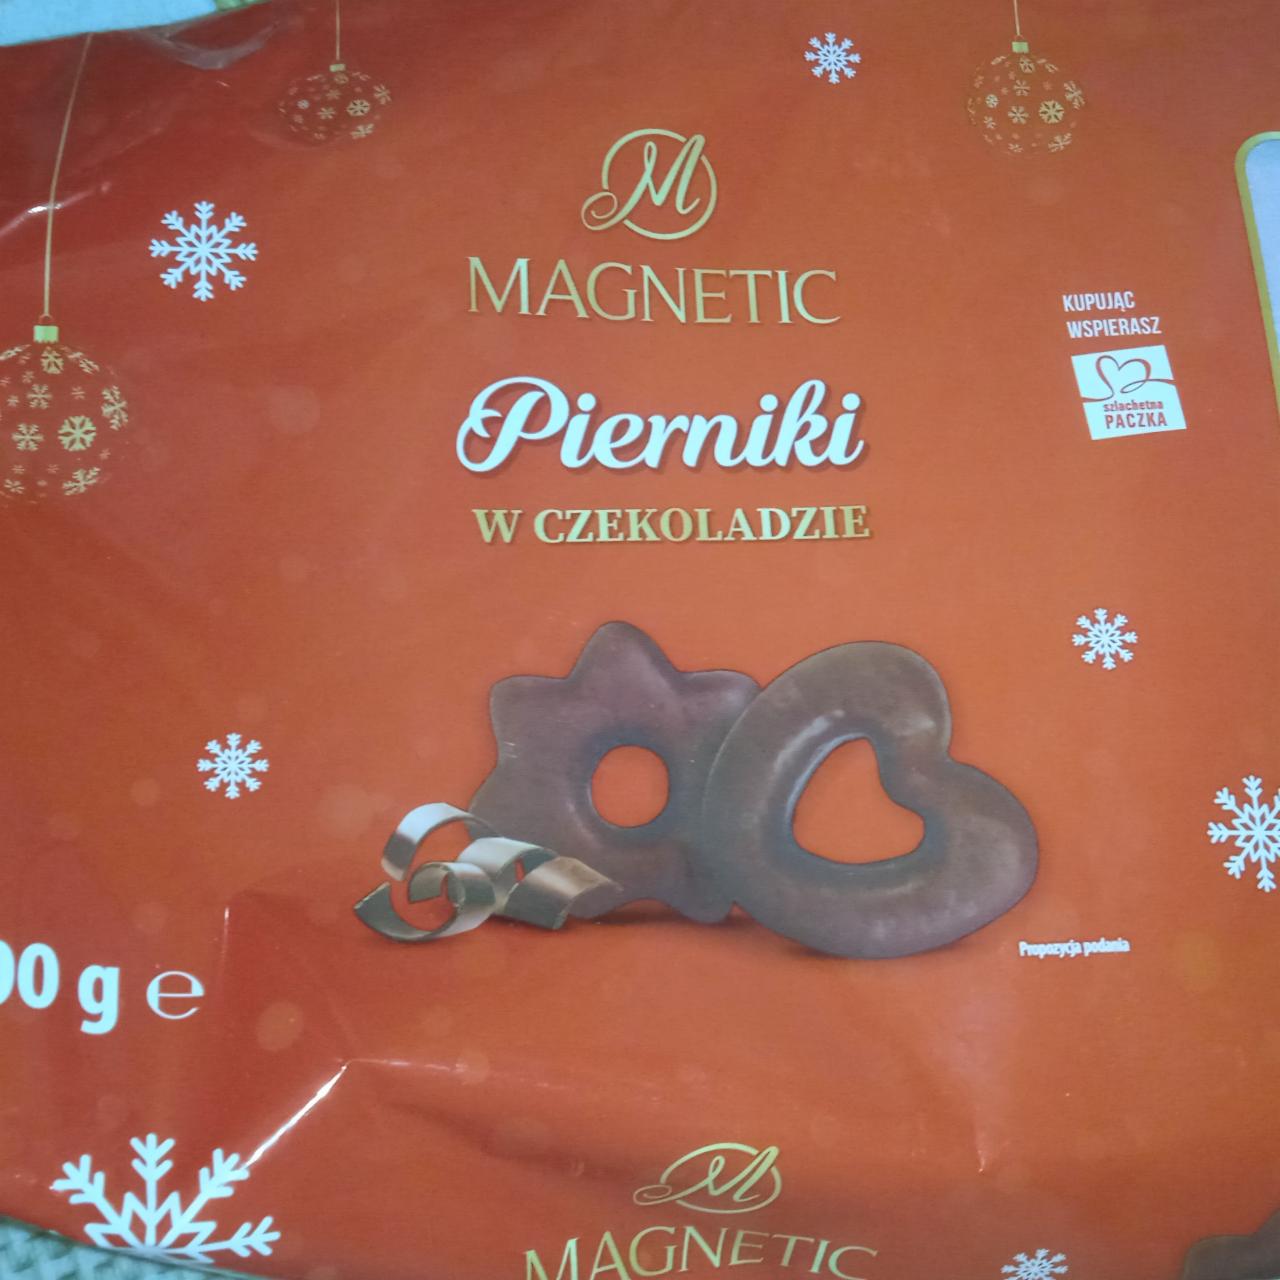 Zdjęcia - Pierniki w czekoladzie mlecznej magnetic